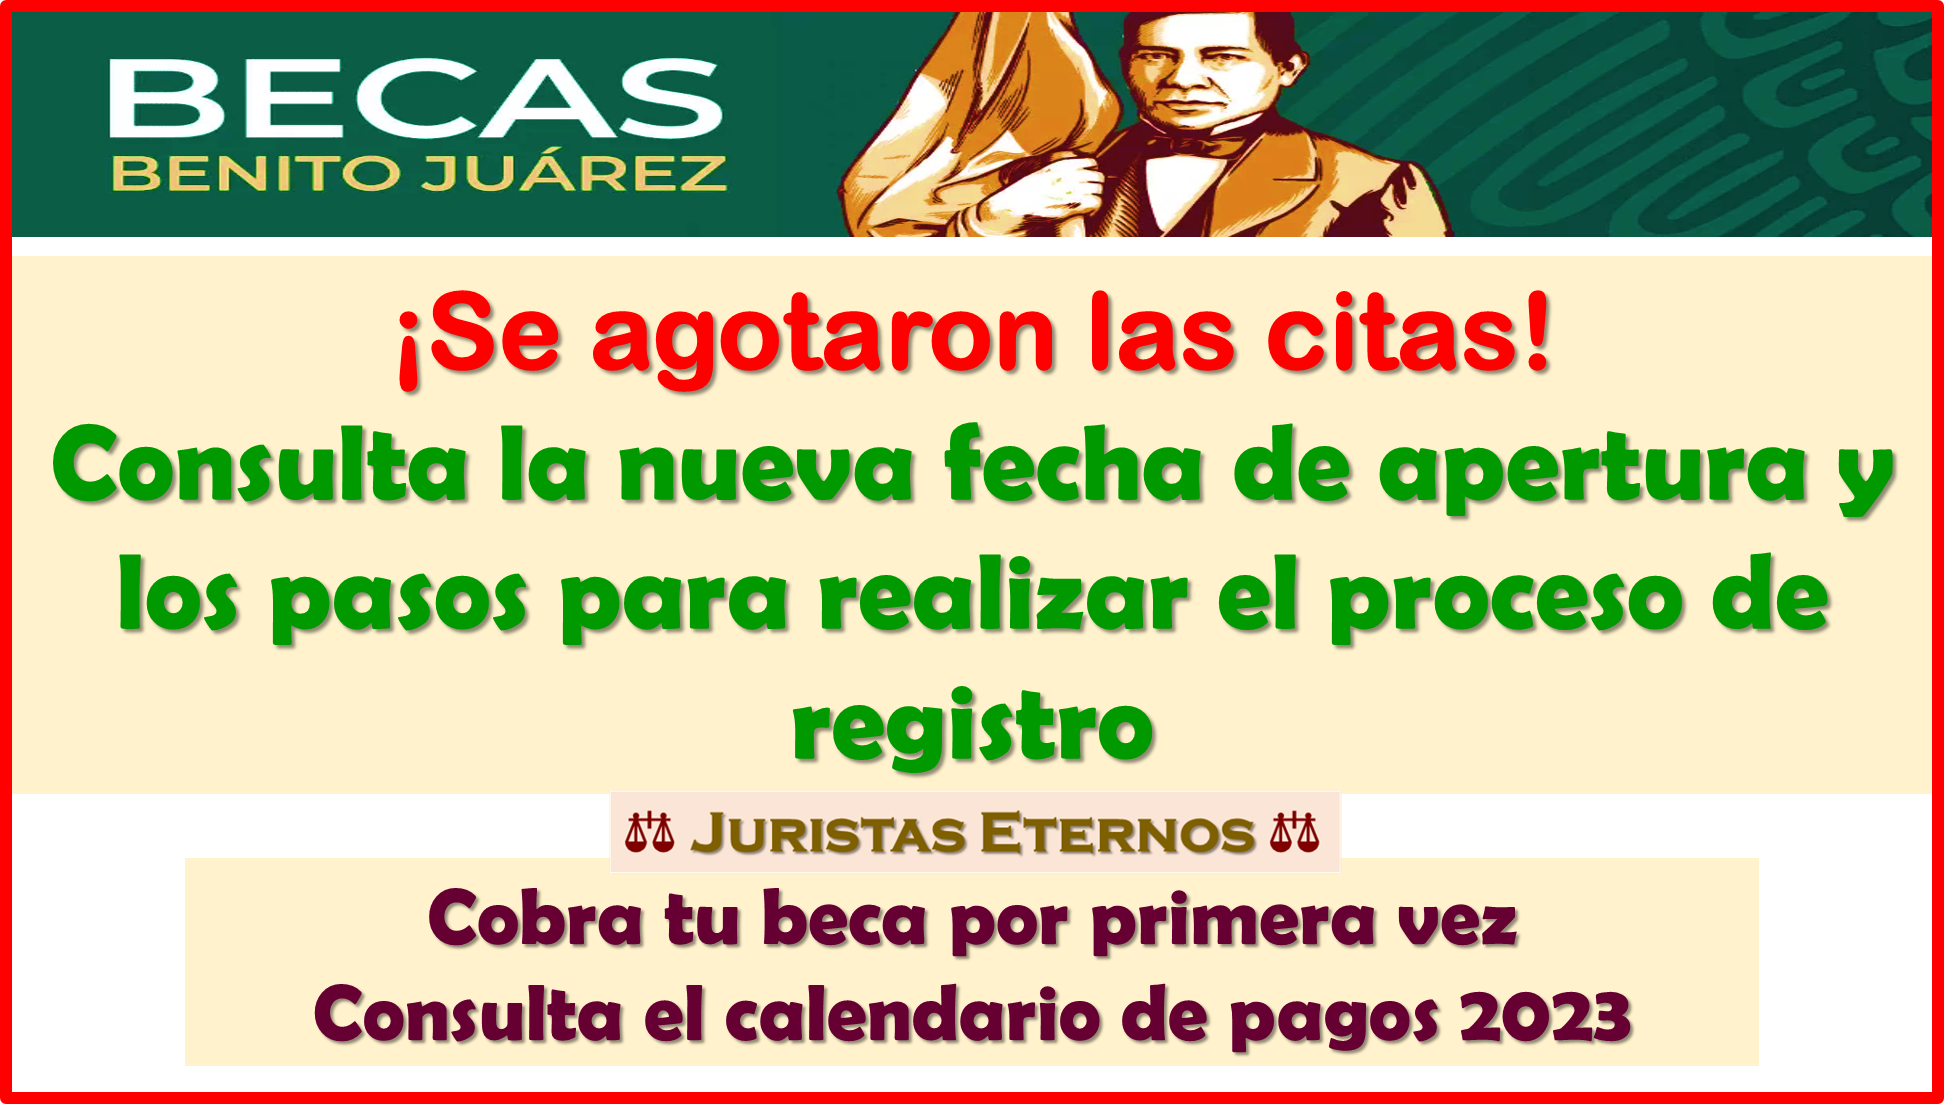 El sistema de citas de Becas Benito Juárez año 2022 han cerrado, consulta la nueva fecha de apertura